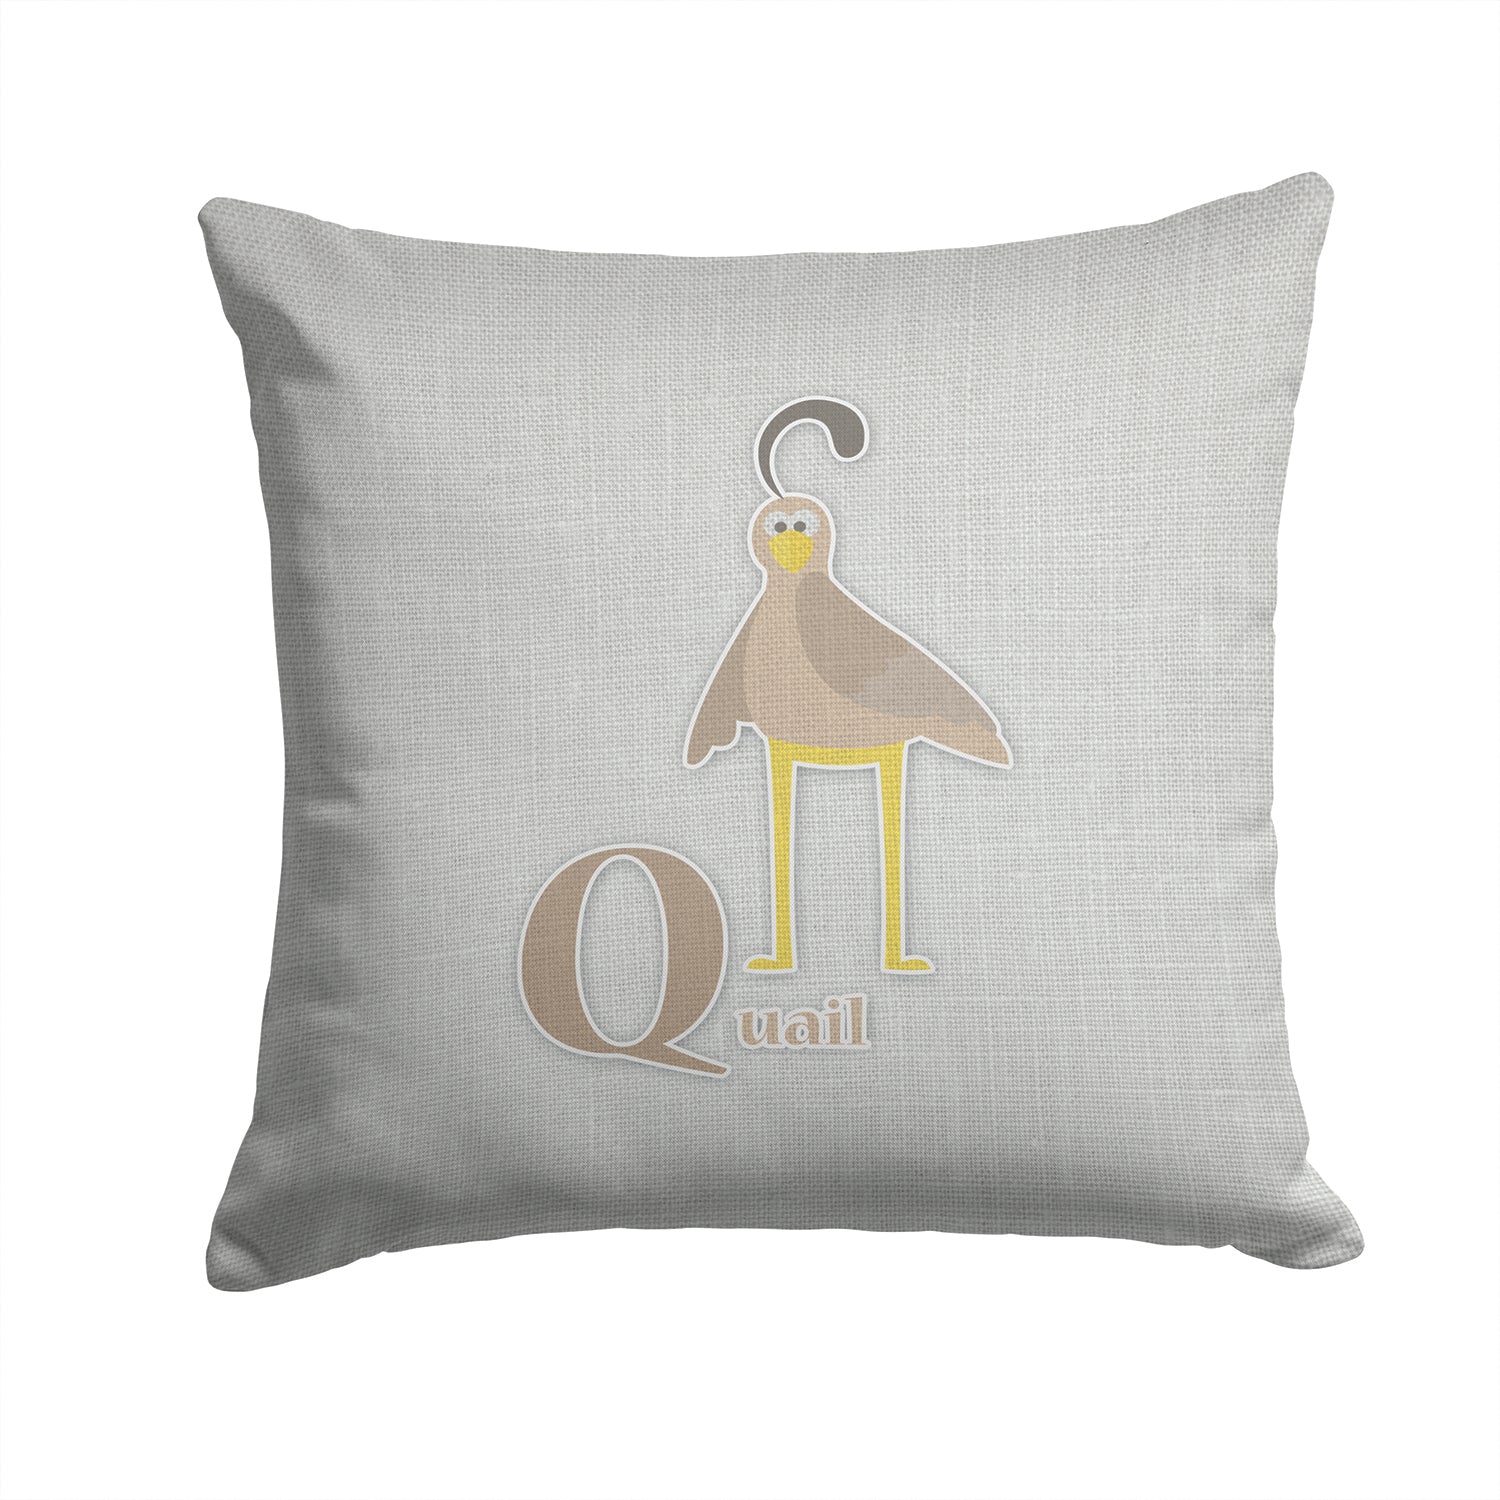 Alphabet Q for Quail Fabric Decorative Pillow BB5742PW1414 - the-store.com